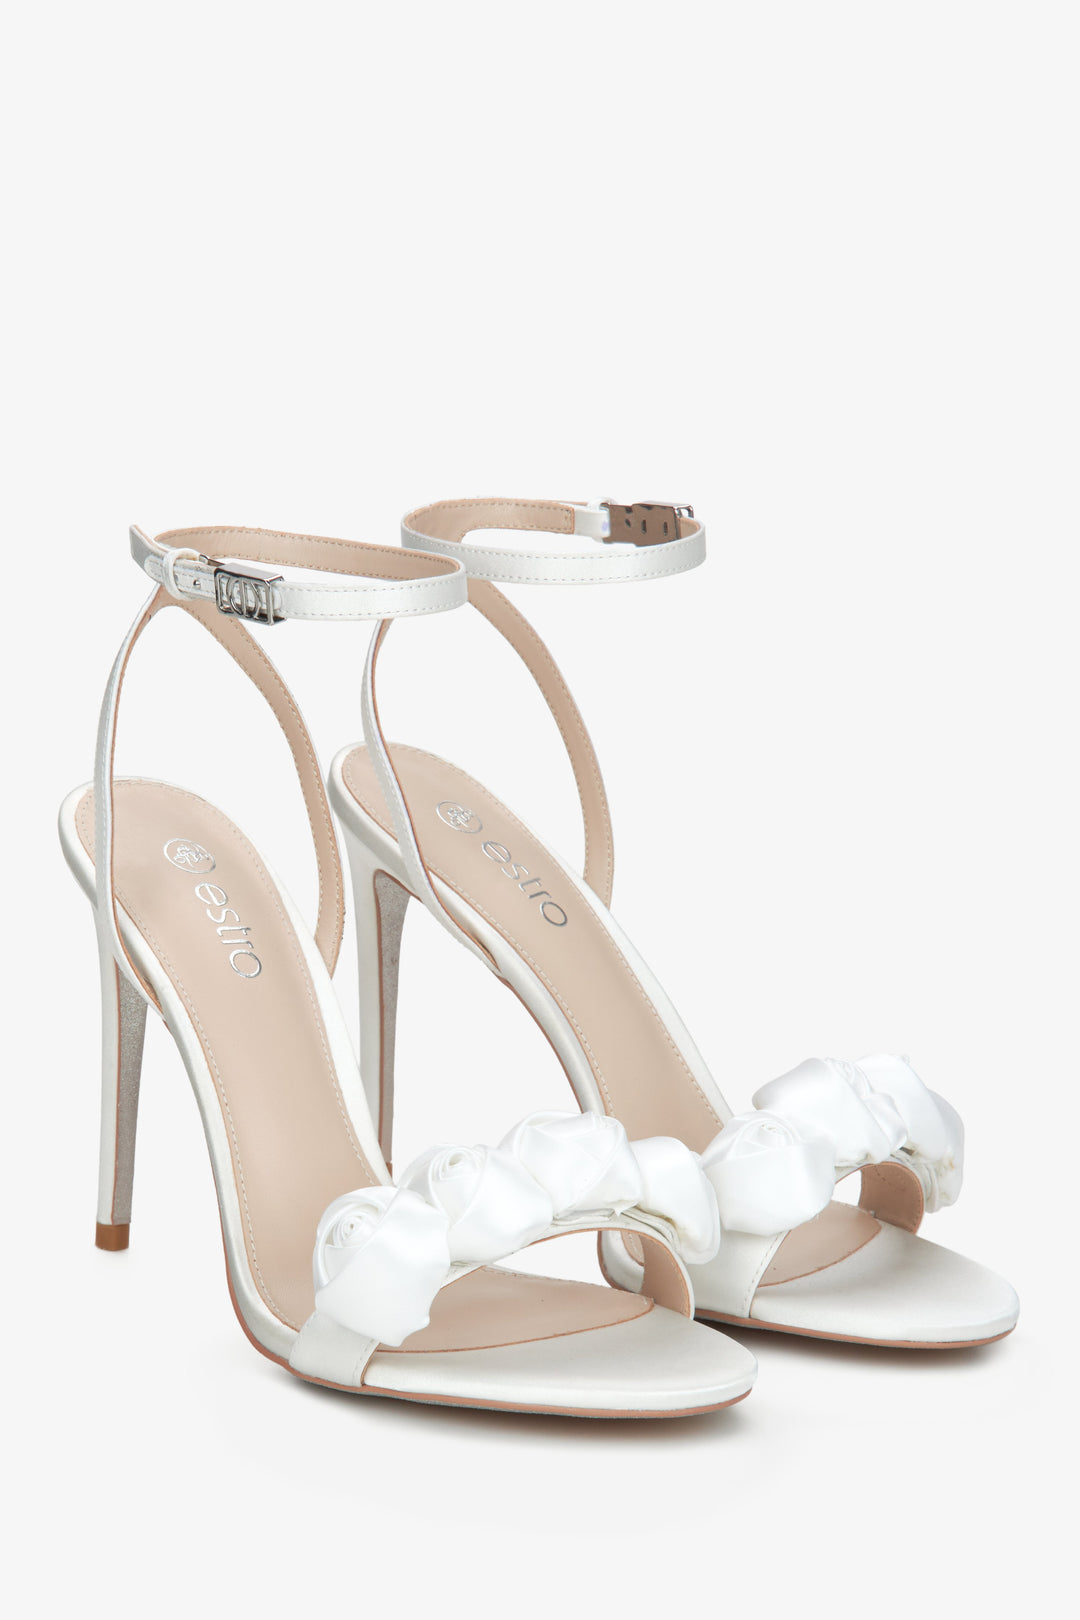 Women's white high heel sandals by Estro.